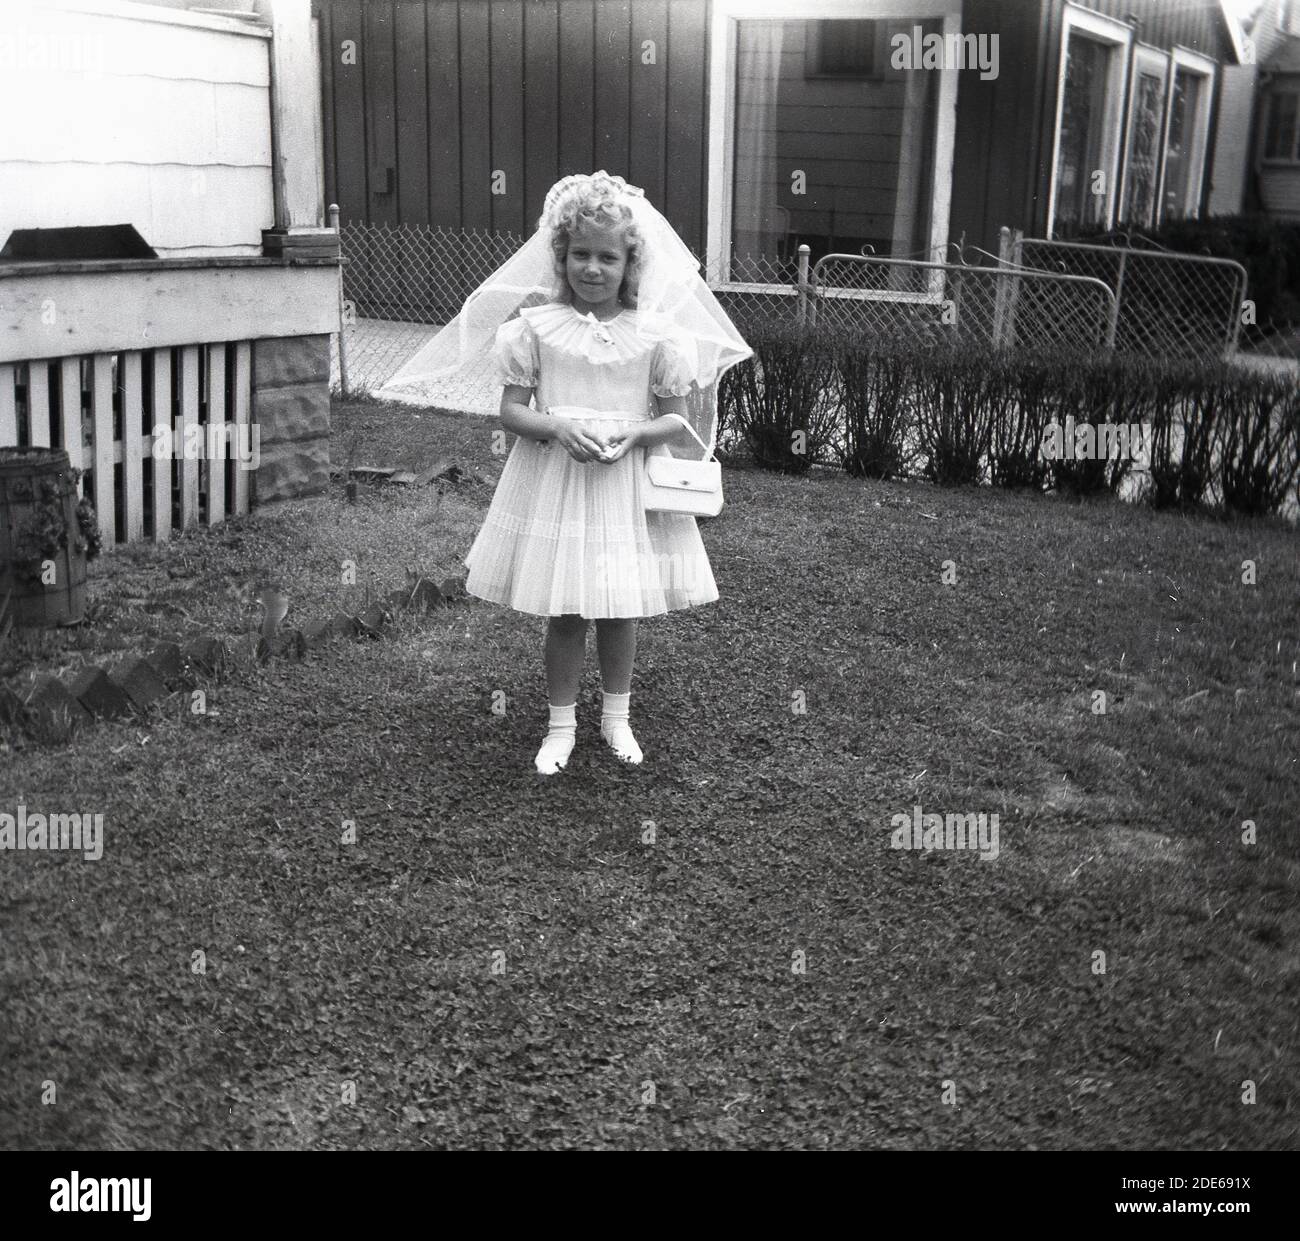 1960s, Historical, USA, ein süßes kleines Mädchen, das als Brautjungfer verkleidet ist und in einem Vorgarten für ihr Foto steht. Weibliche Brautjungfern werden manchmal als Blumenmädchen bezeichnet. Stockfoto